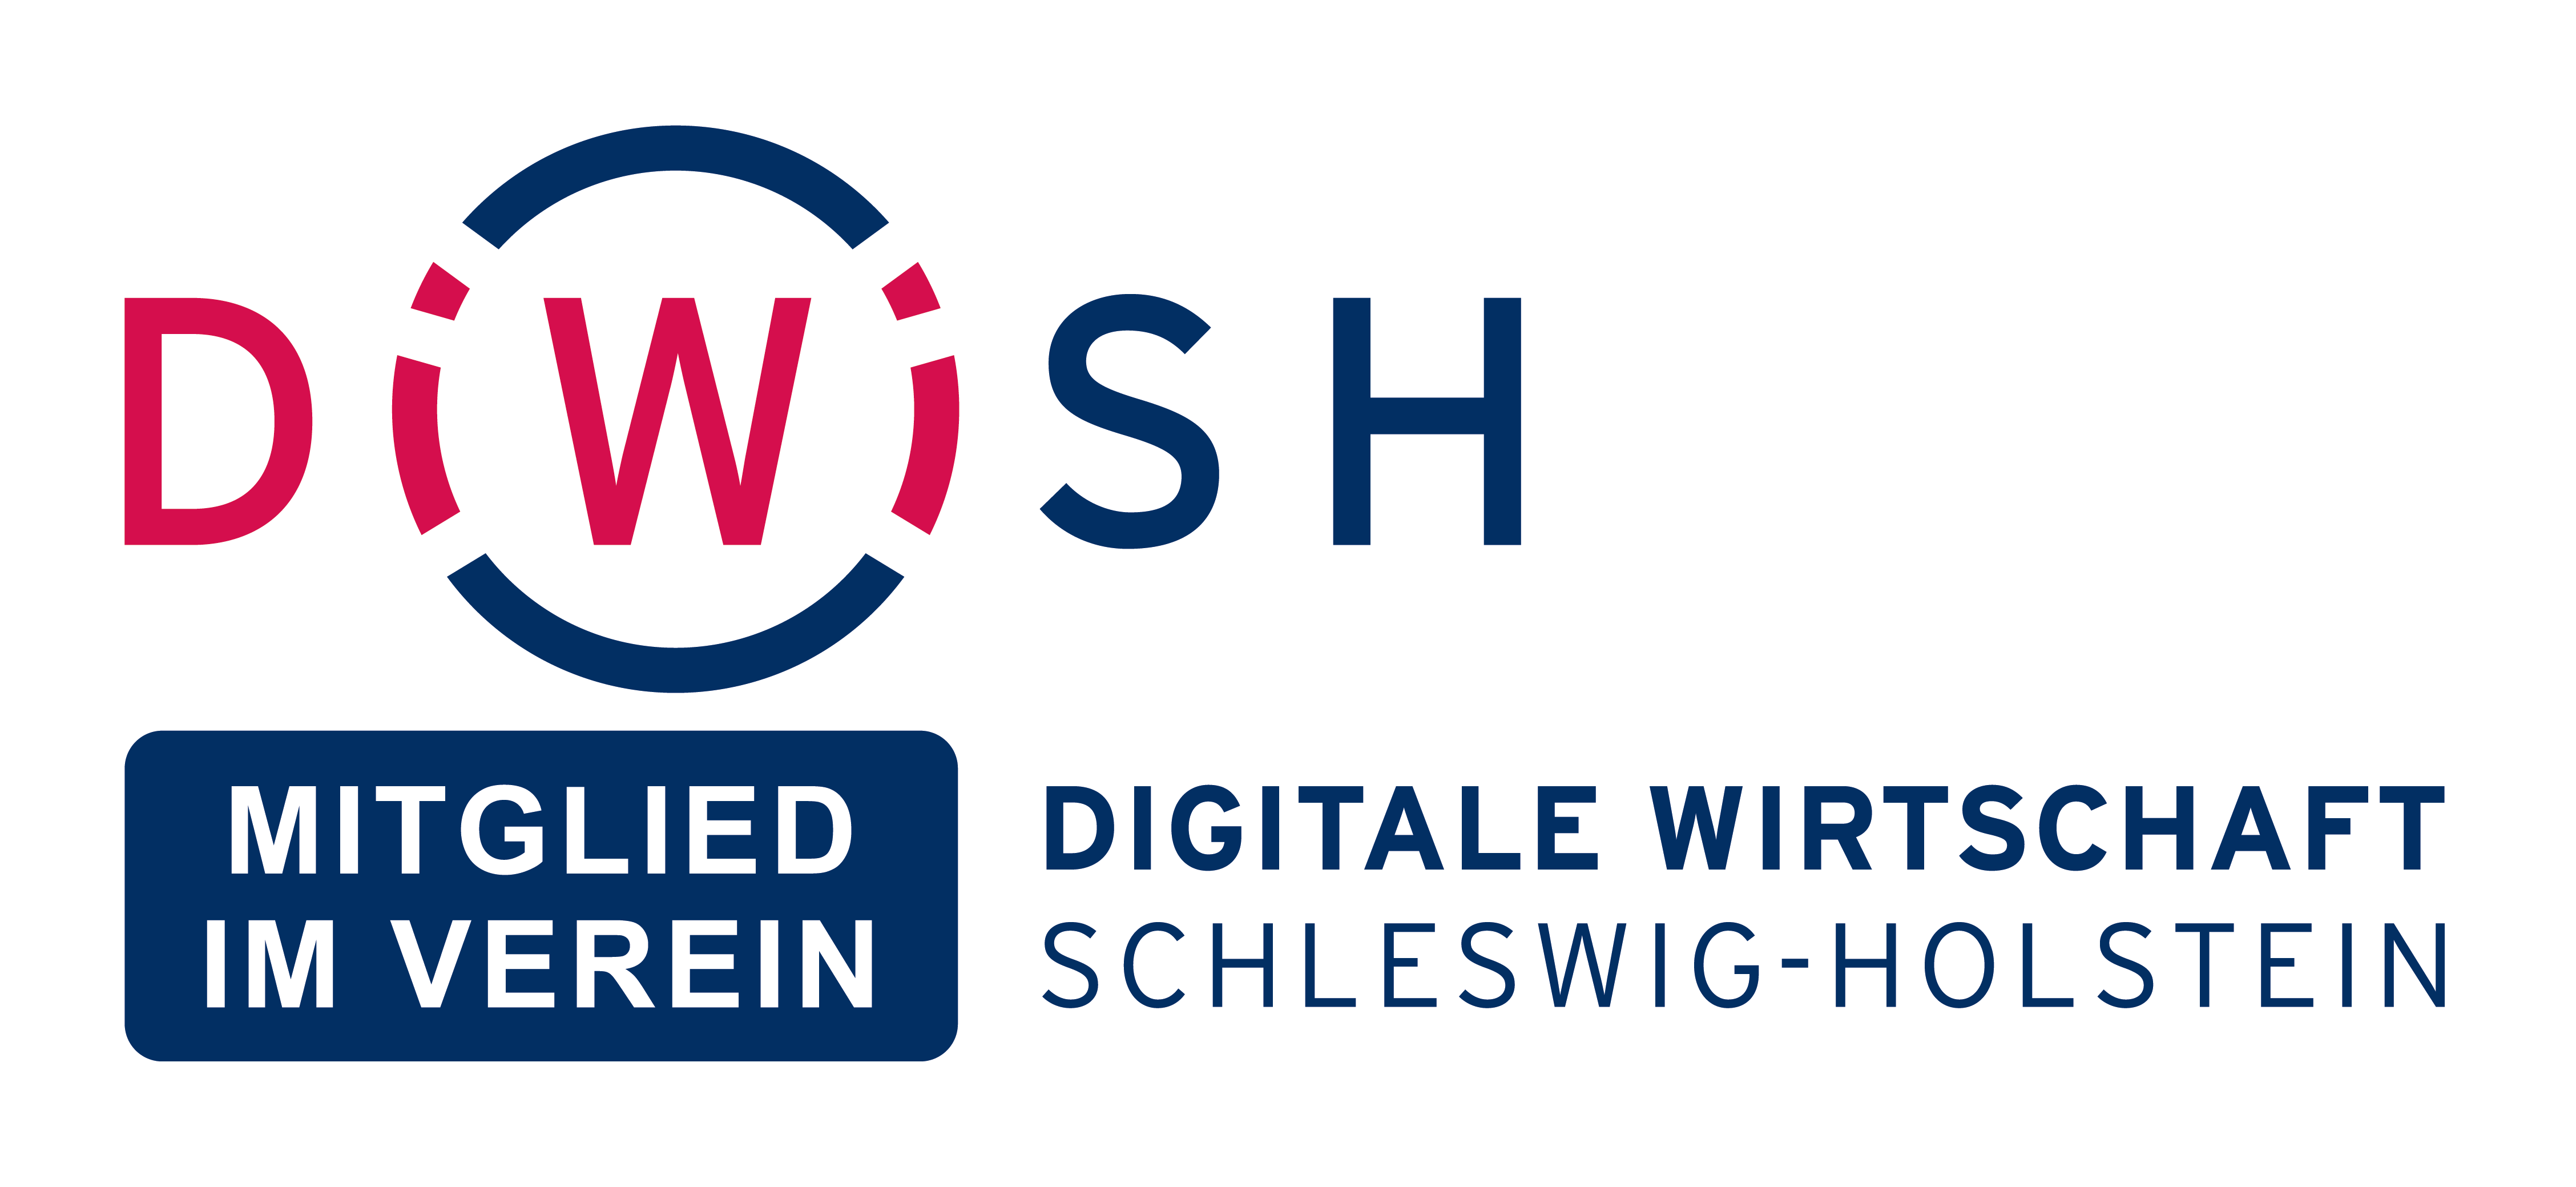 Wir sind stolzer Partner der Digitalen Wirtschaft Schleswig-Holstein (DiWiSH)